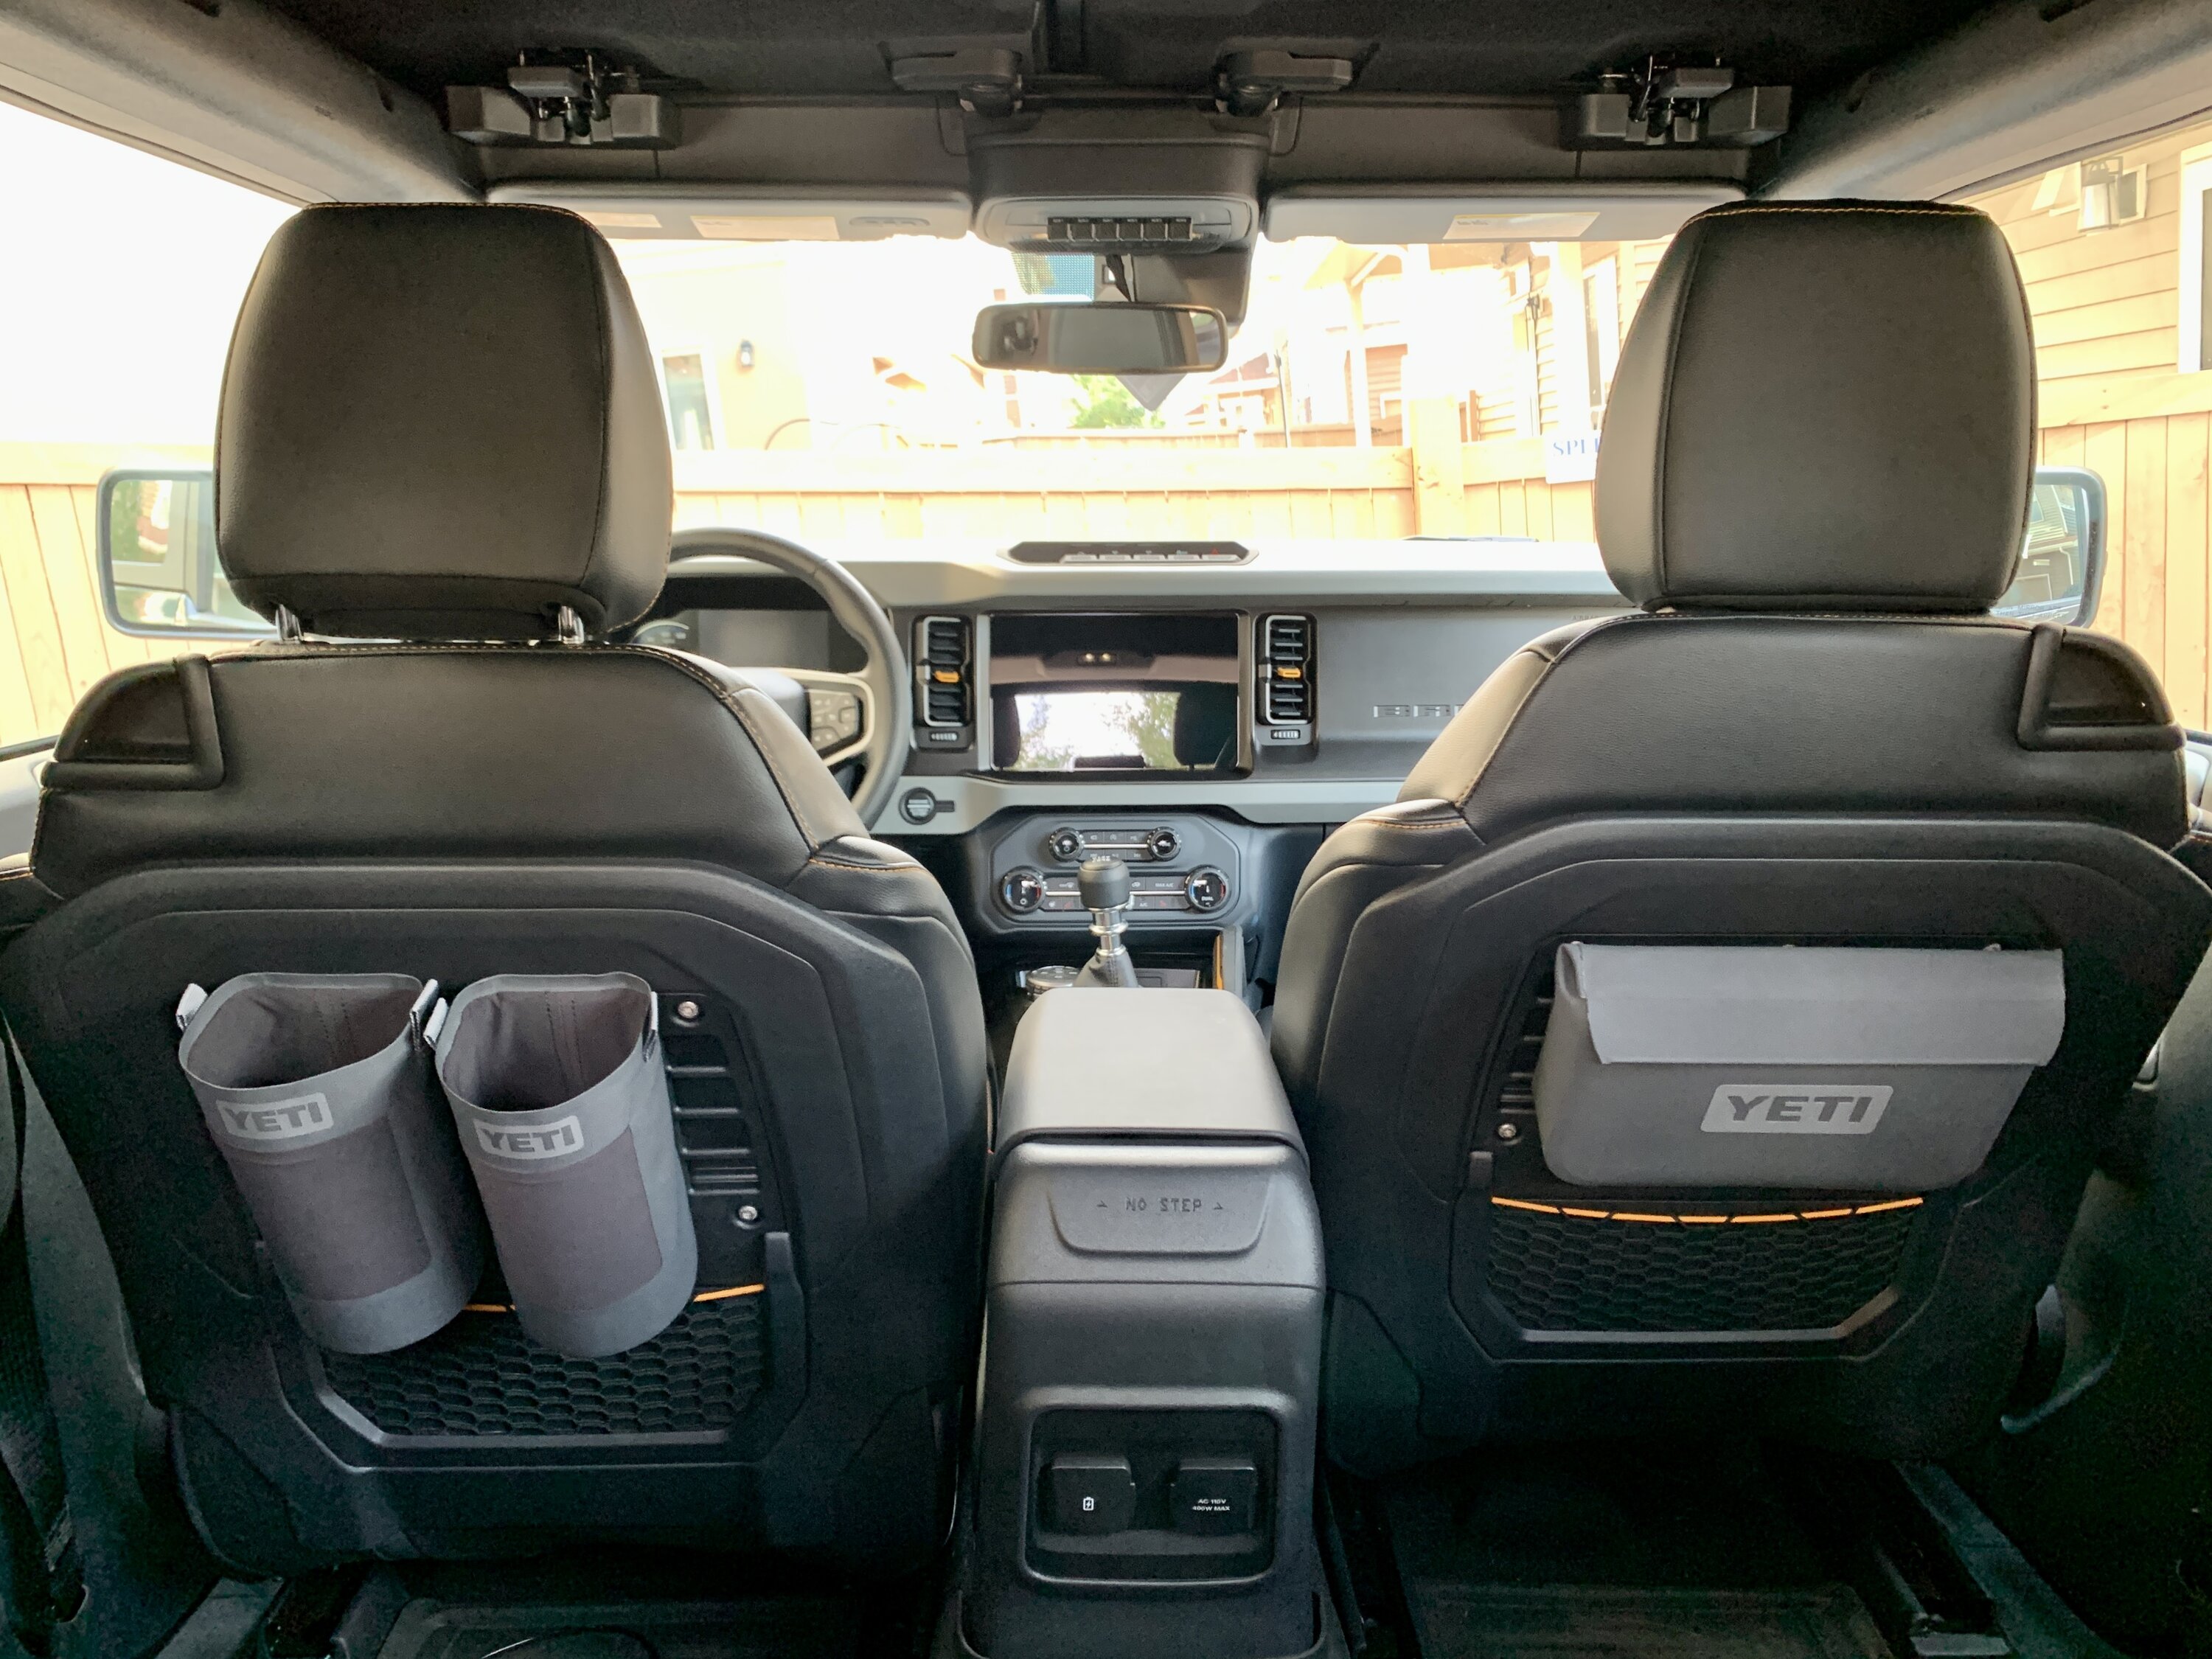 YETI Rambler Sling & SideKick on Seat Molle Panels